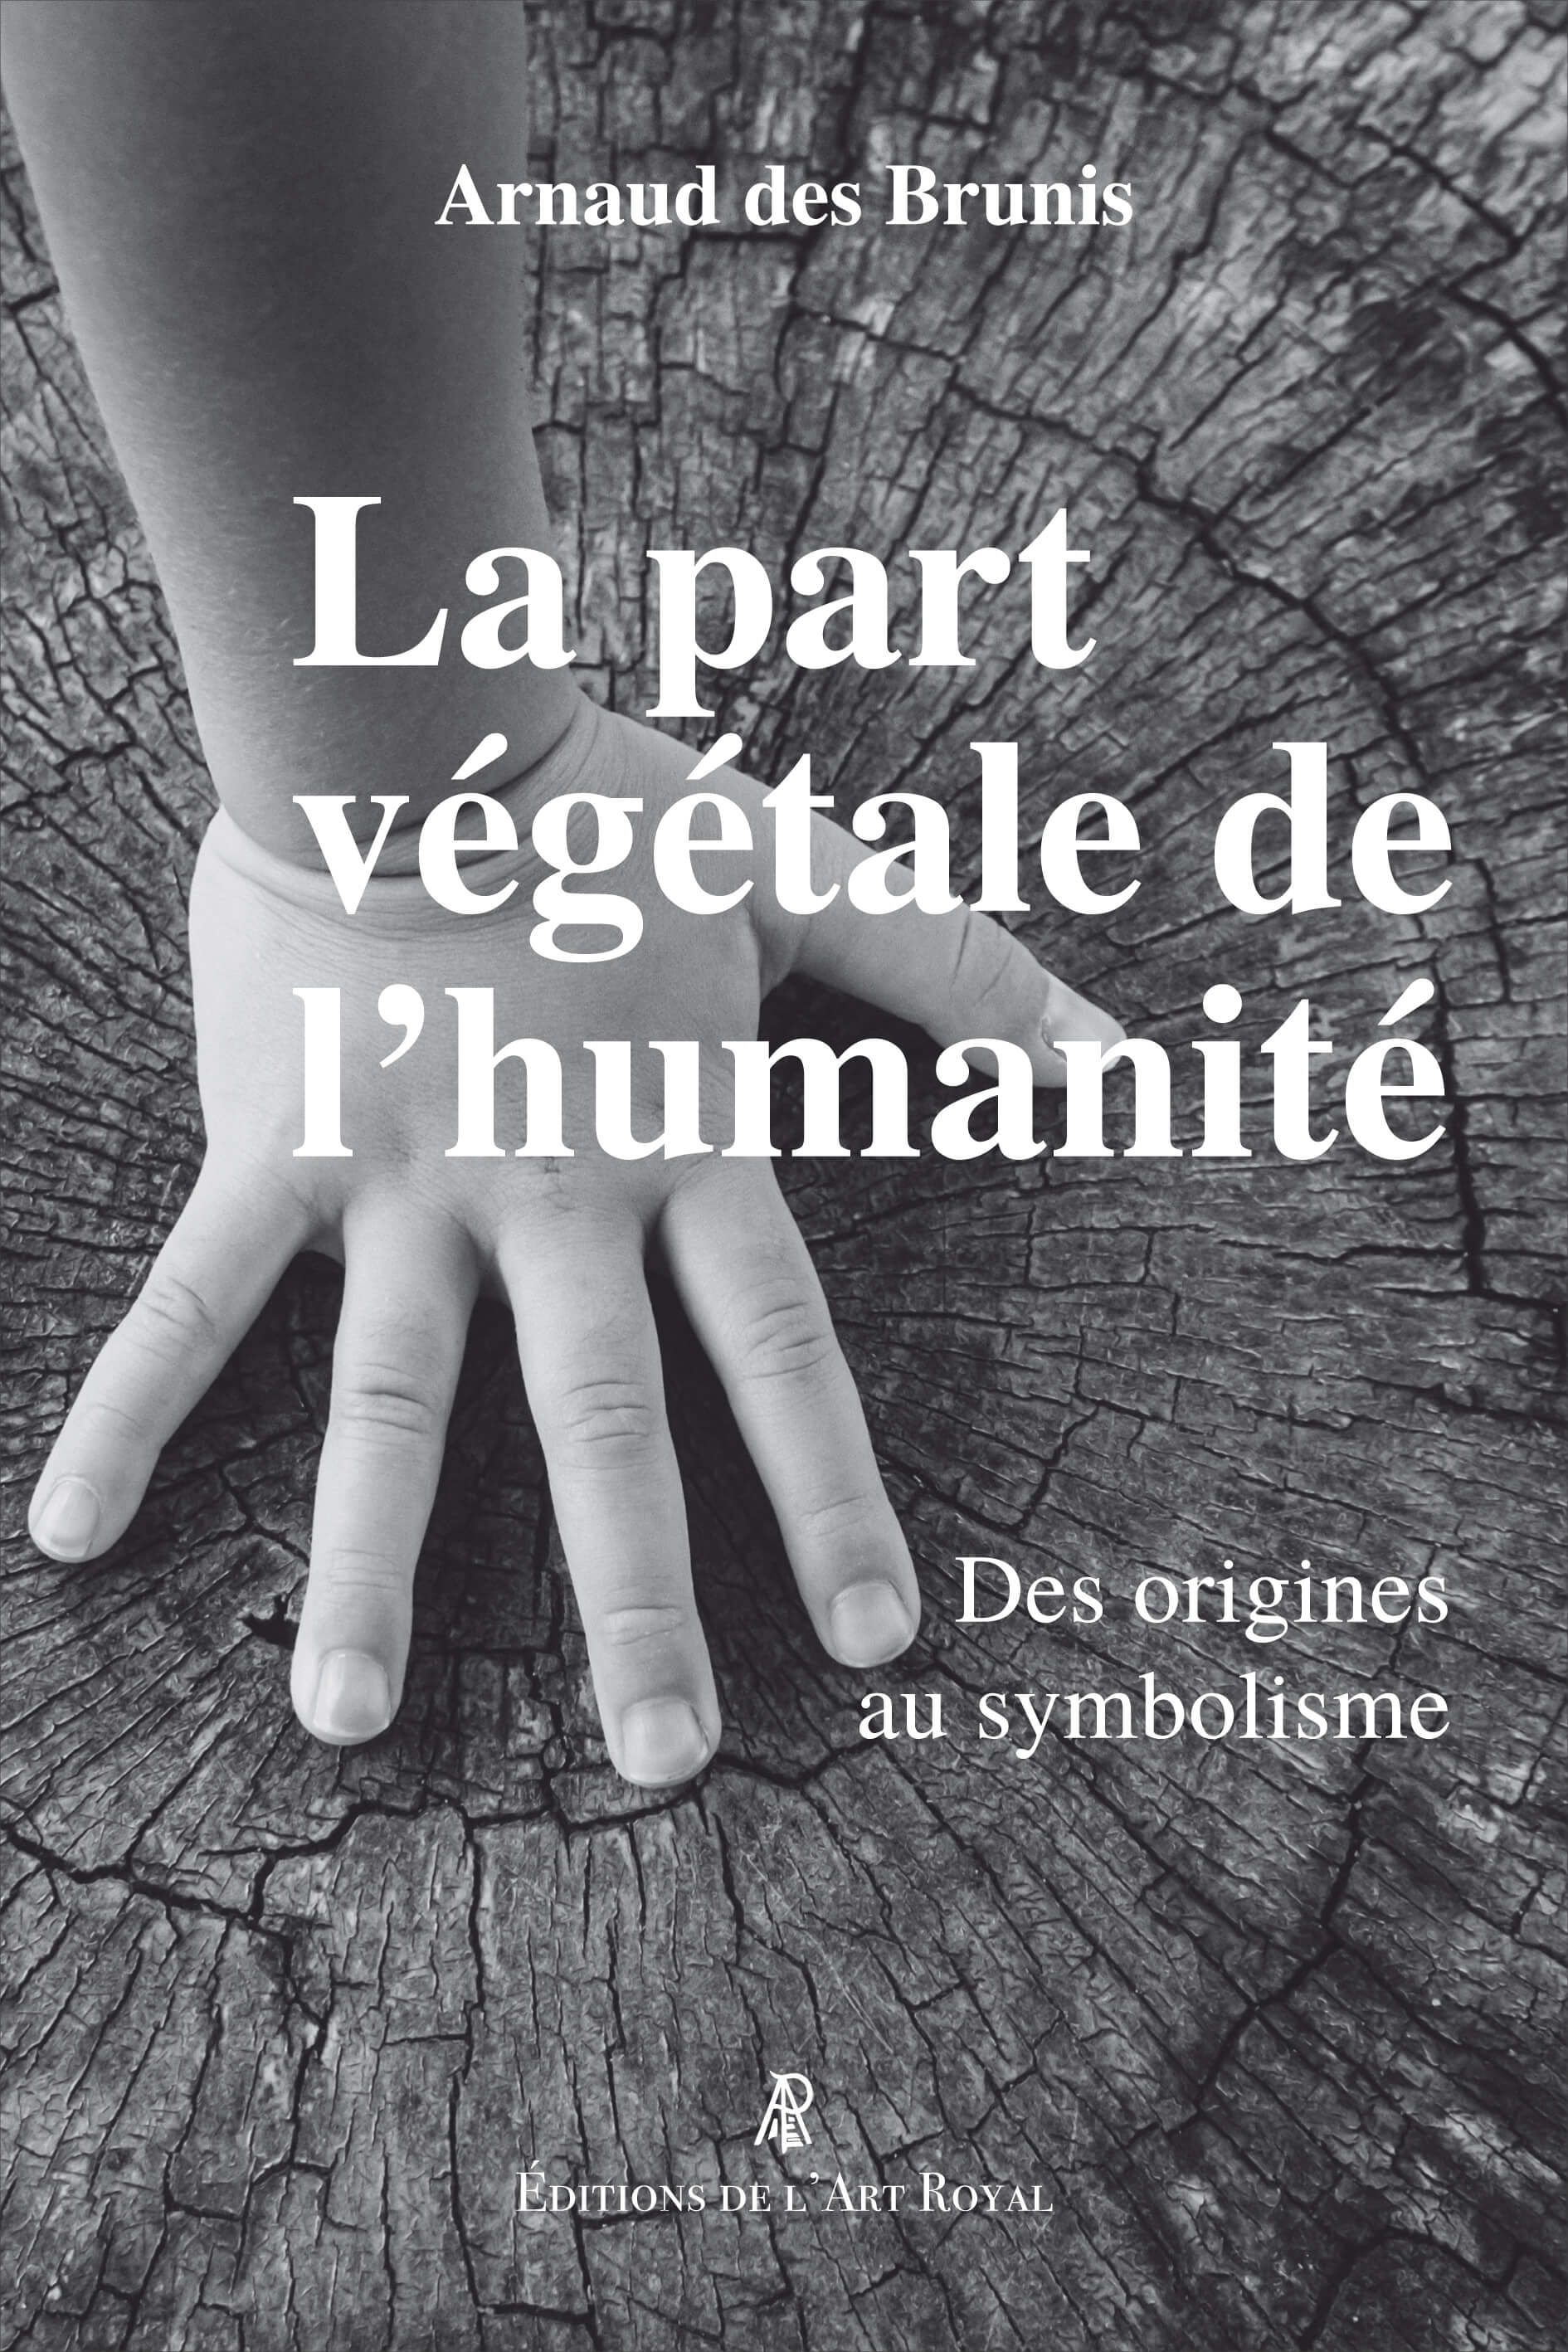 La part végétale de l’humanité - Des origines au symbolisme, Arnaud des Brunis